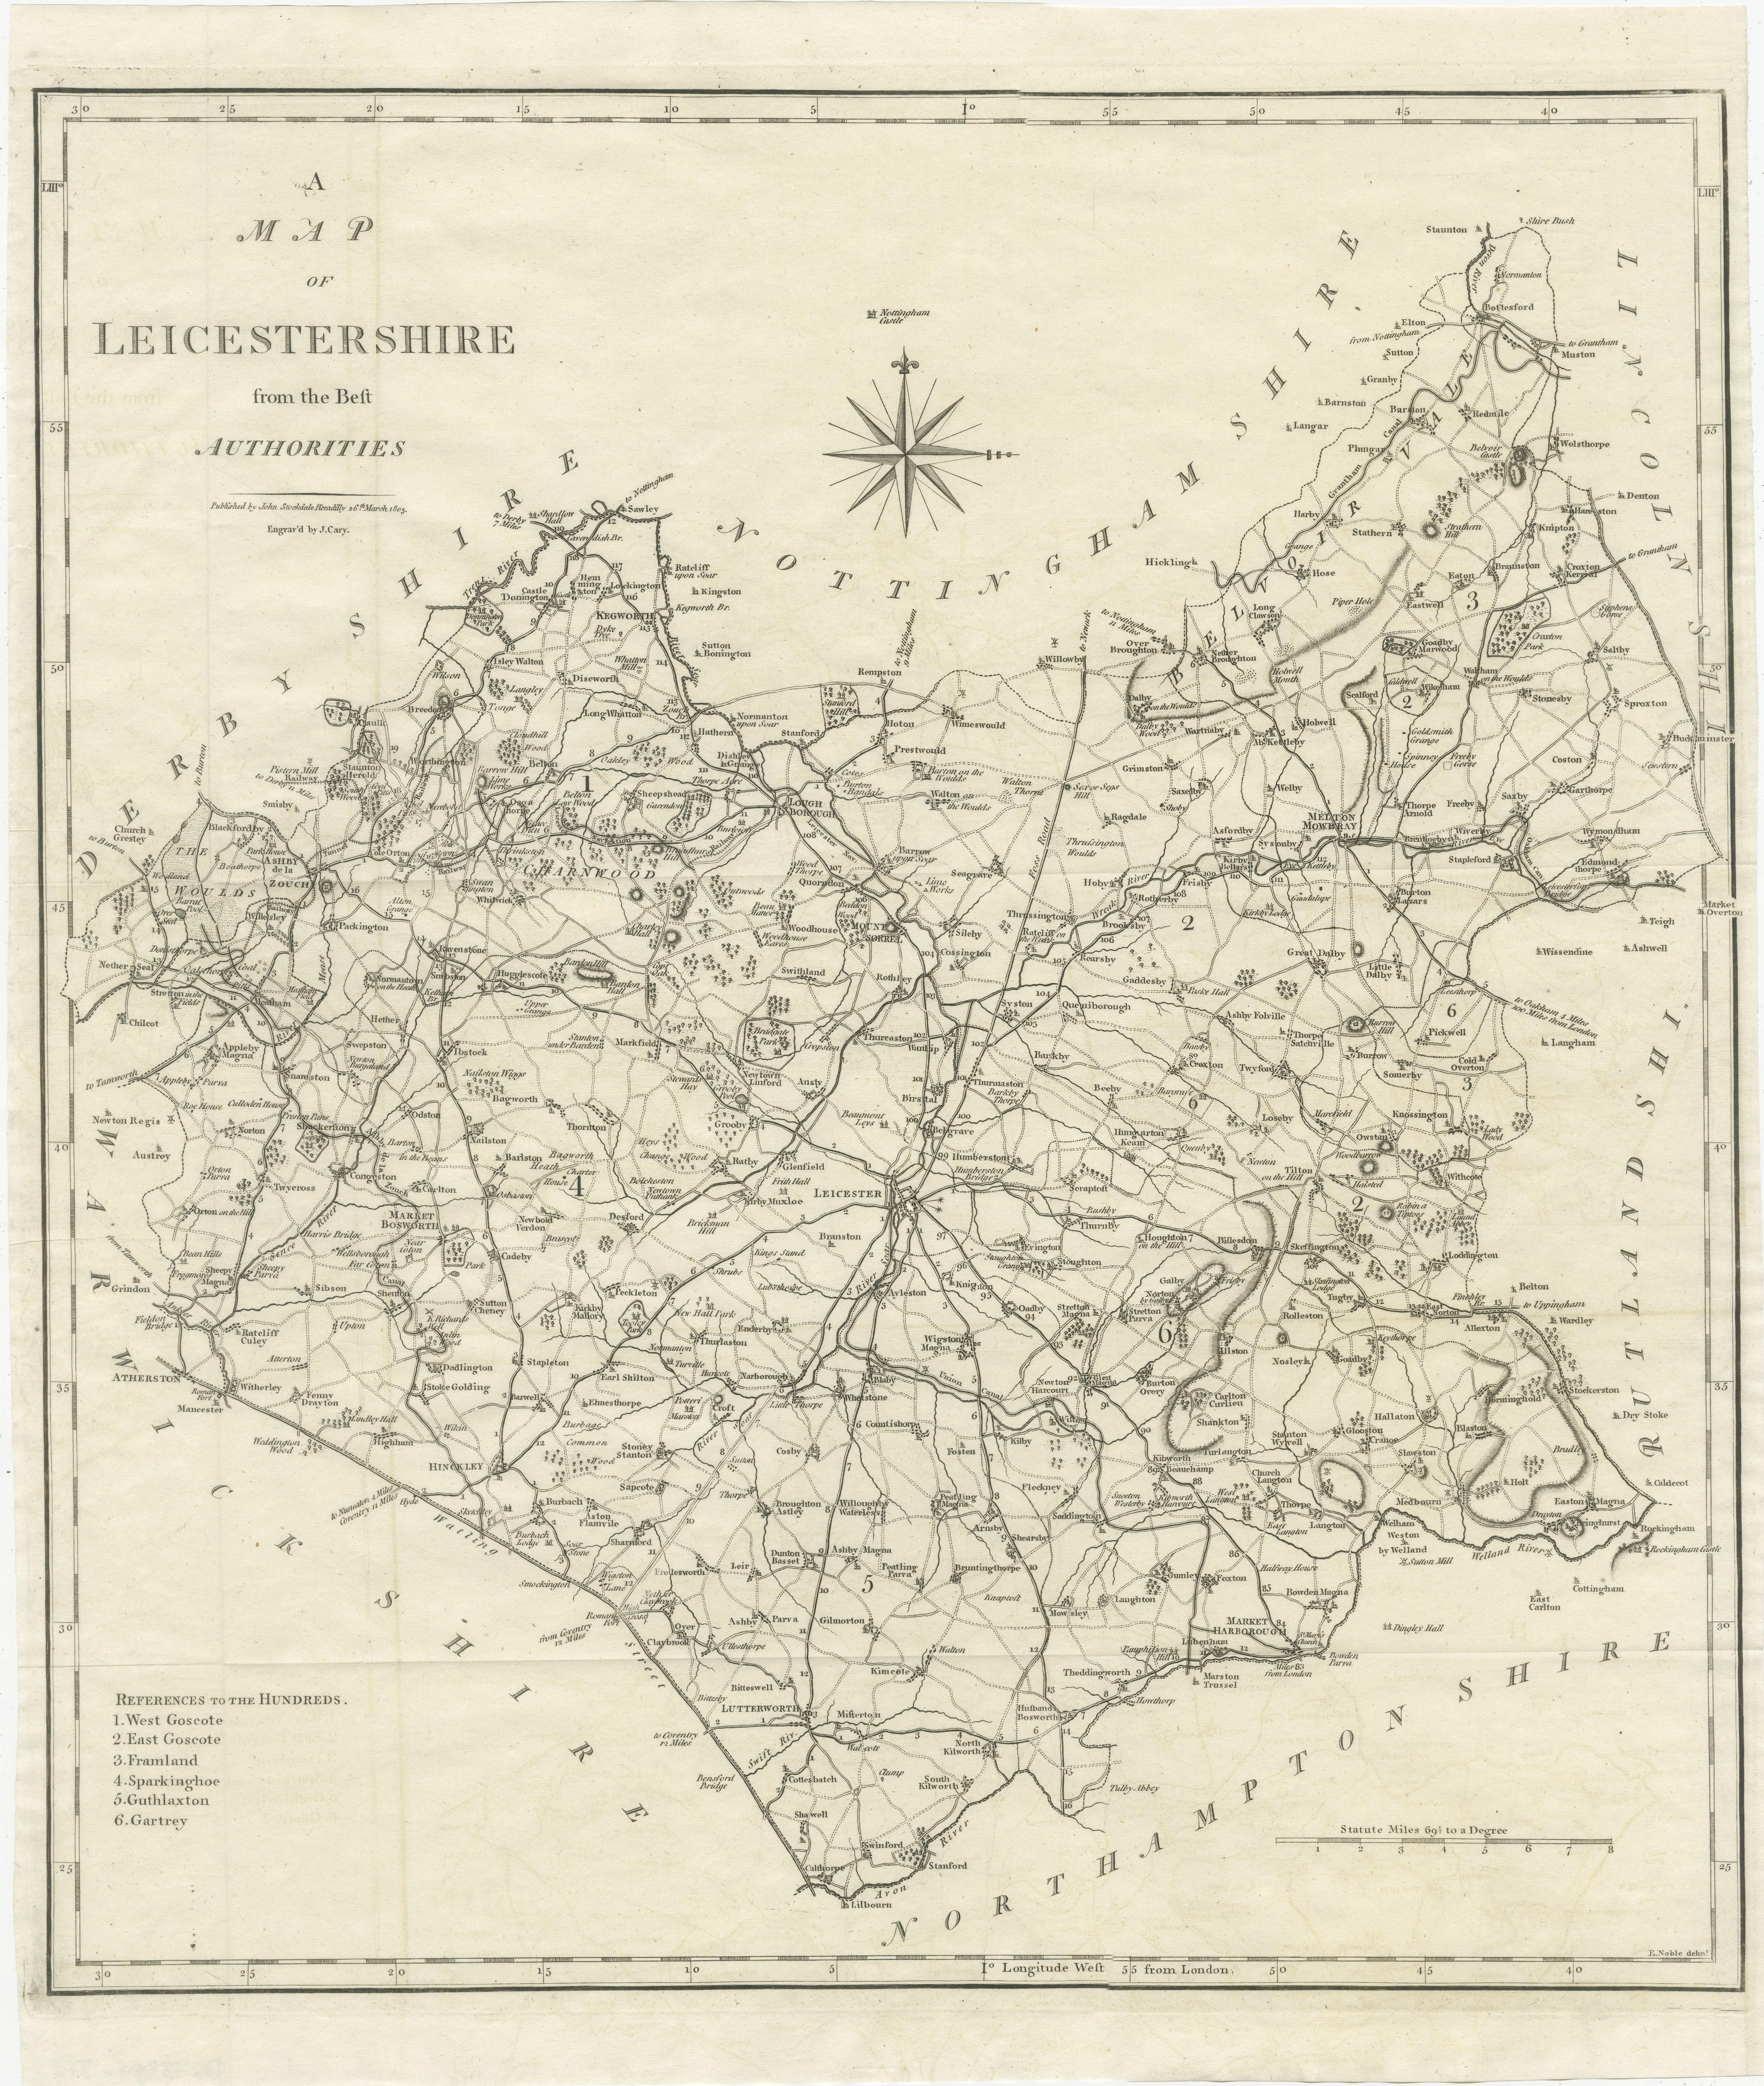 Explorez le passé du Leicestershire : Carte ancienne par John Cary

Entrez dans l'histoire du Leicestershire, en Angleterre, avec cette ancienne carte originale du comté gravée par le célèbre cartographe John Cary. Intitulée 